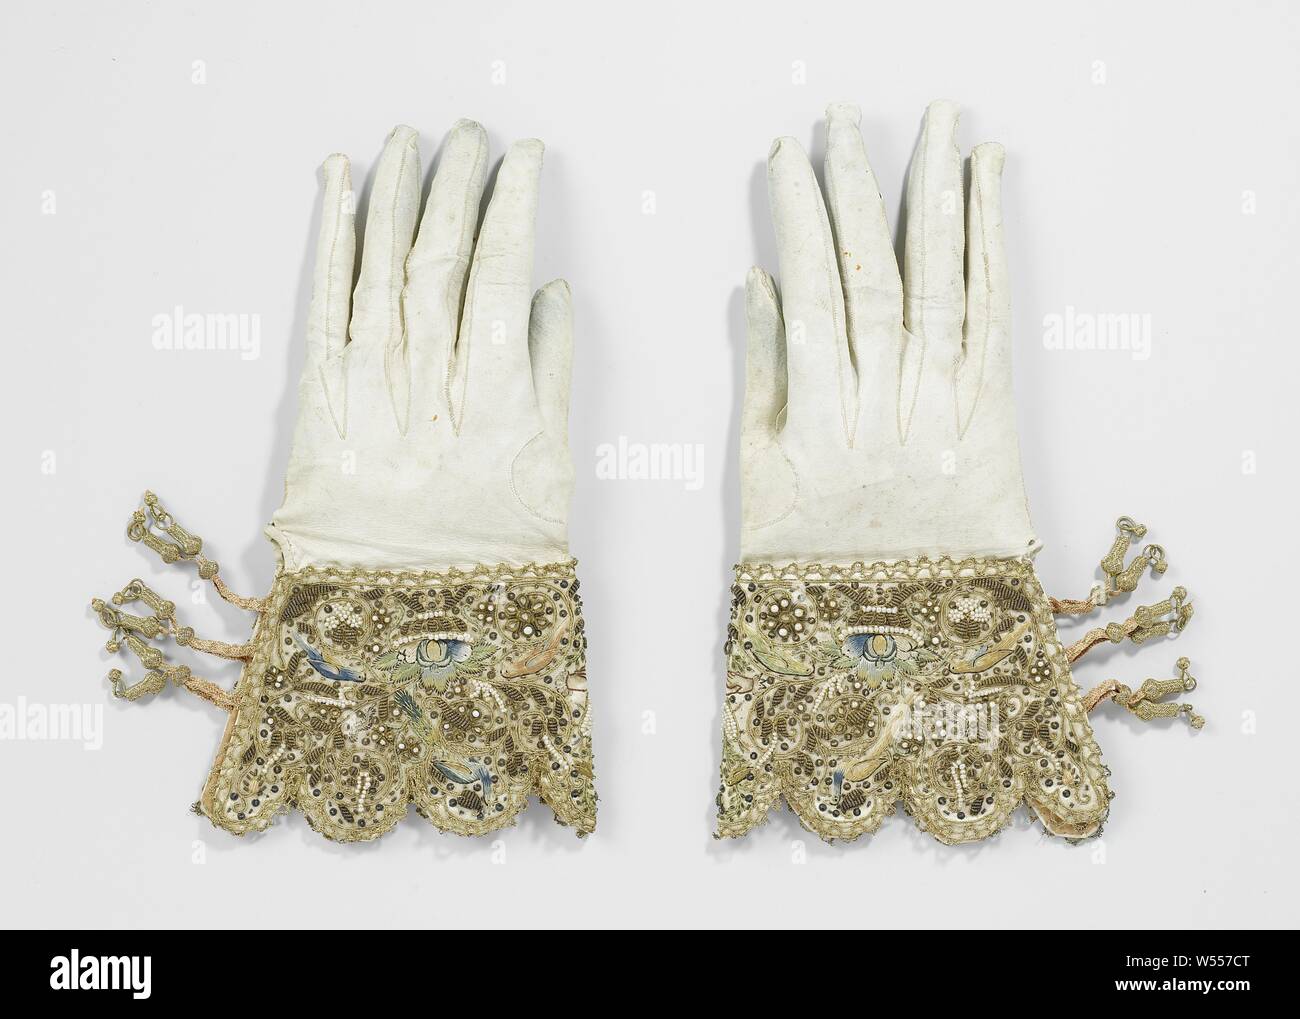 Un par de guantes de boda, Izquierda de guante blanco nupcial Wax Leather,  ricamente bordada, caps. Bordes encapuchados. Cerrado con tres pares de  bandas de encaje rosa, sobre la cual se desliza